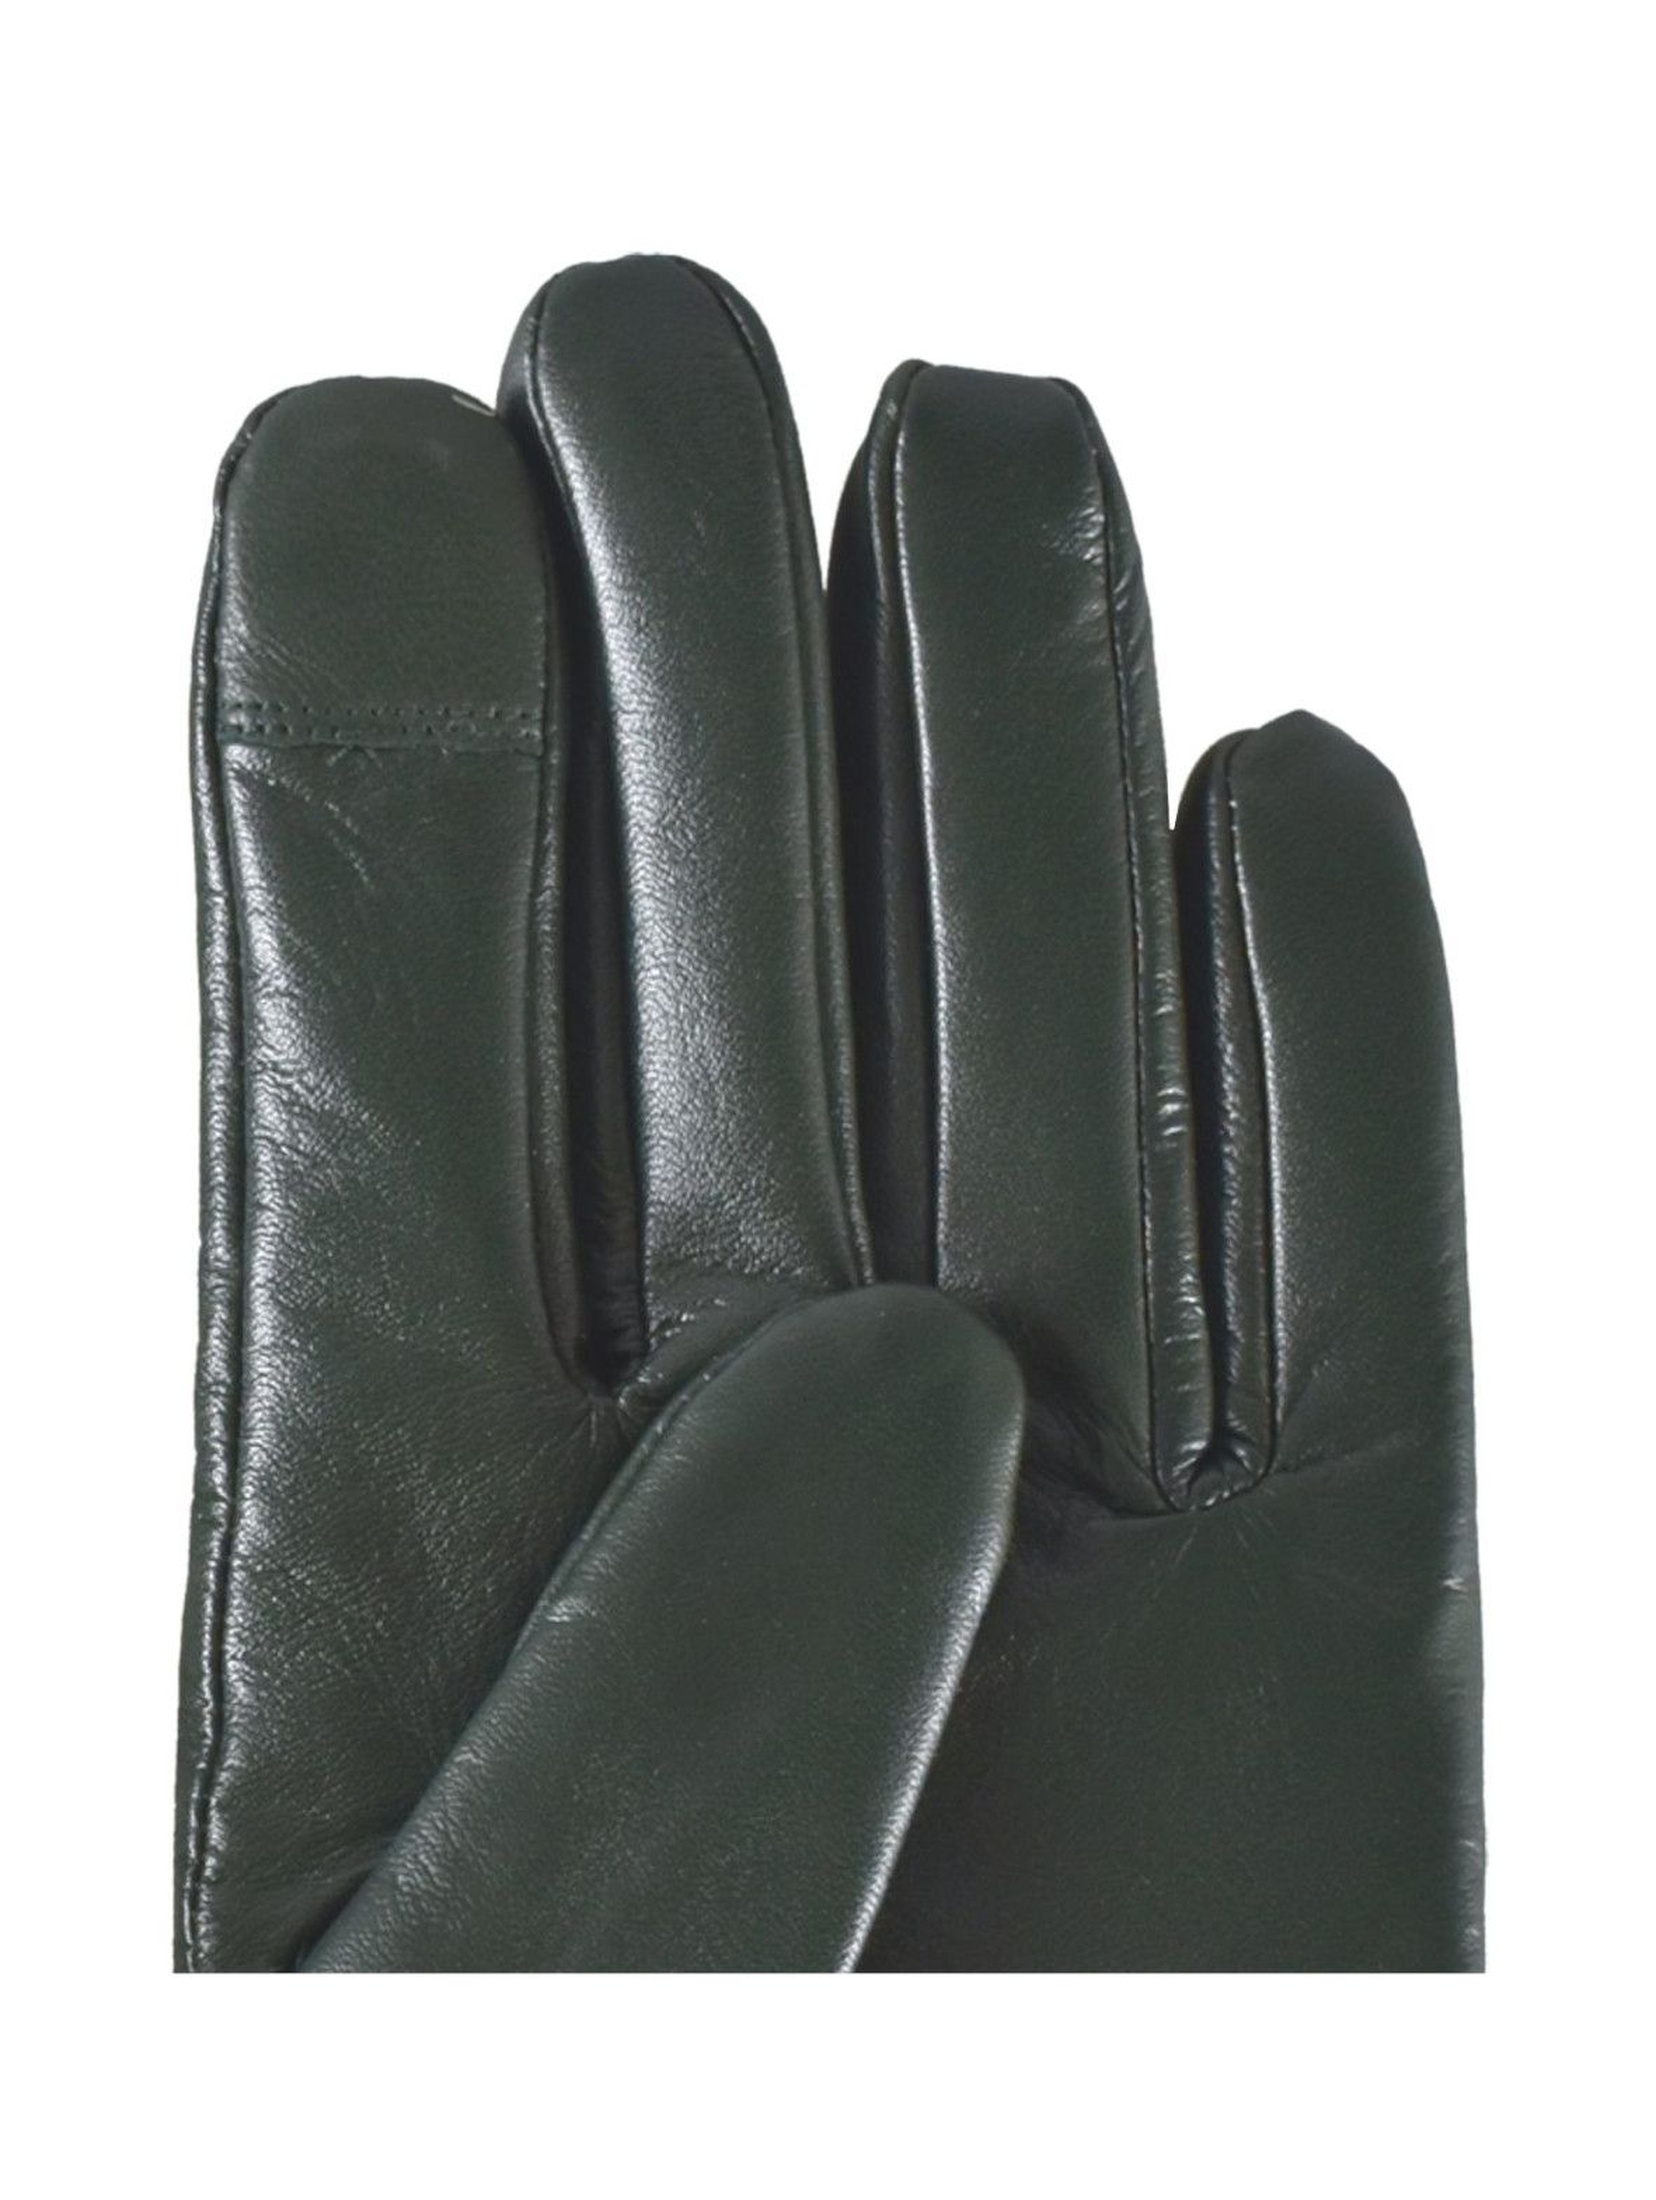 Rękawiczki damskie skórzane antybakteryjne - zielone